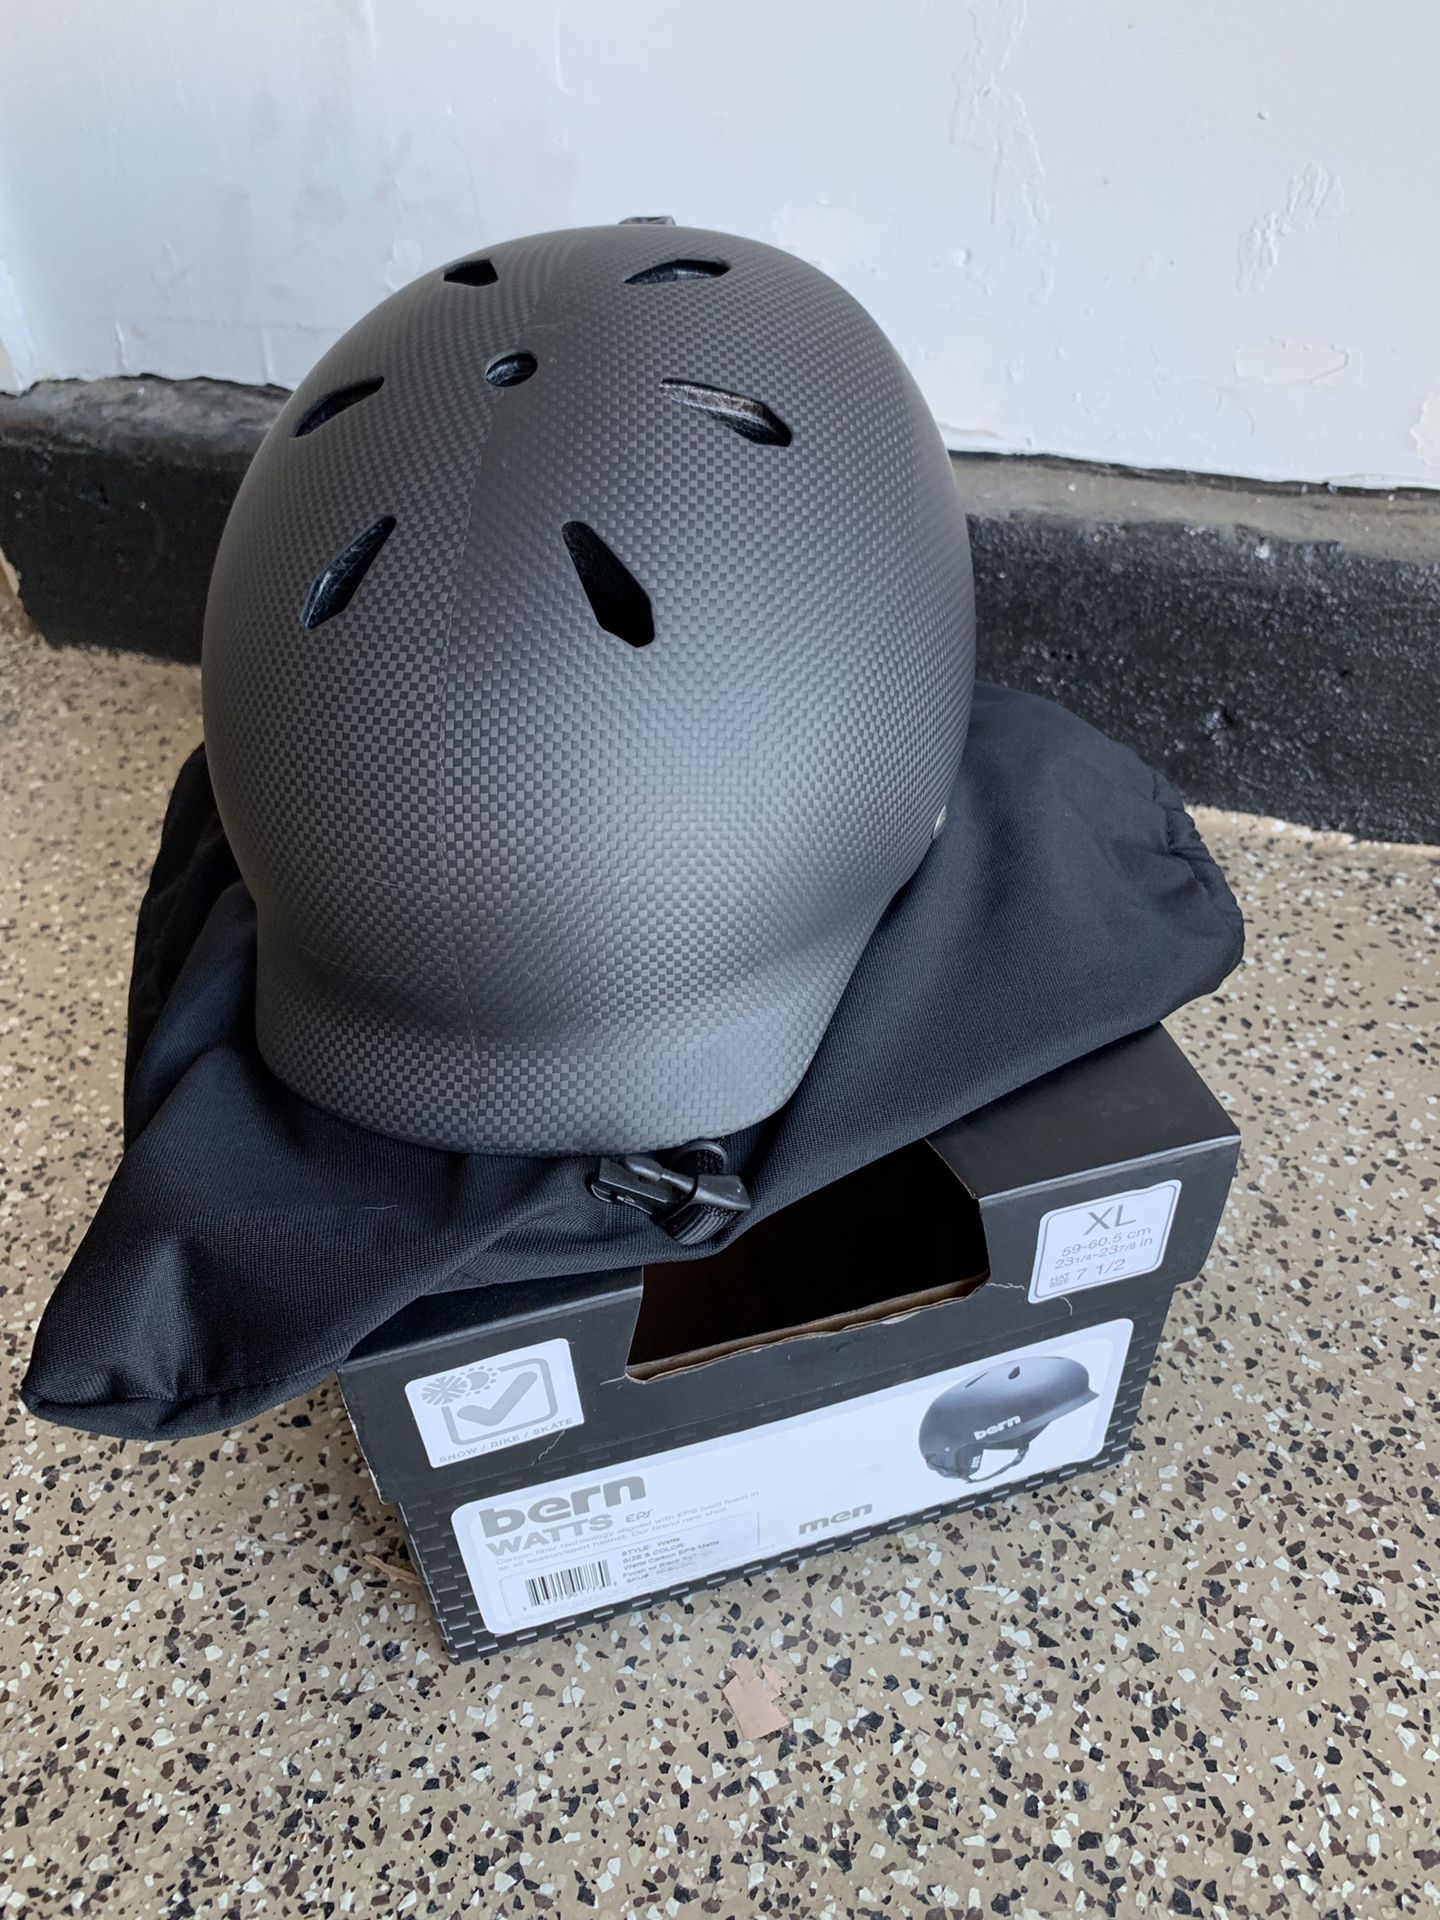 XL Bern Watts Carbon Fiber Helmet